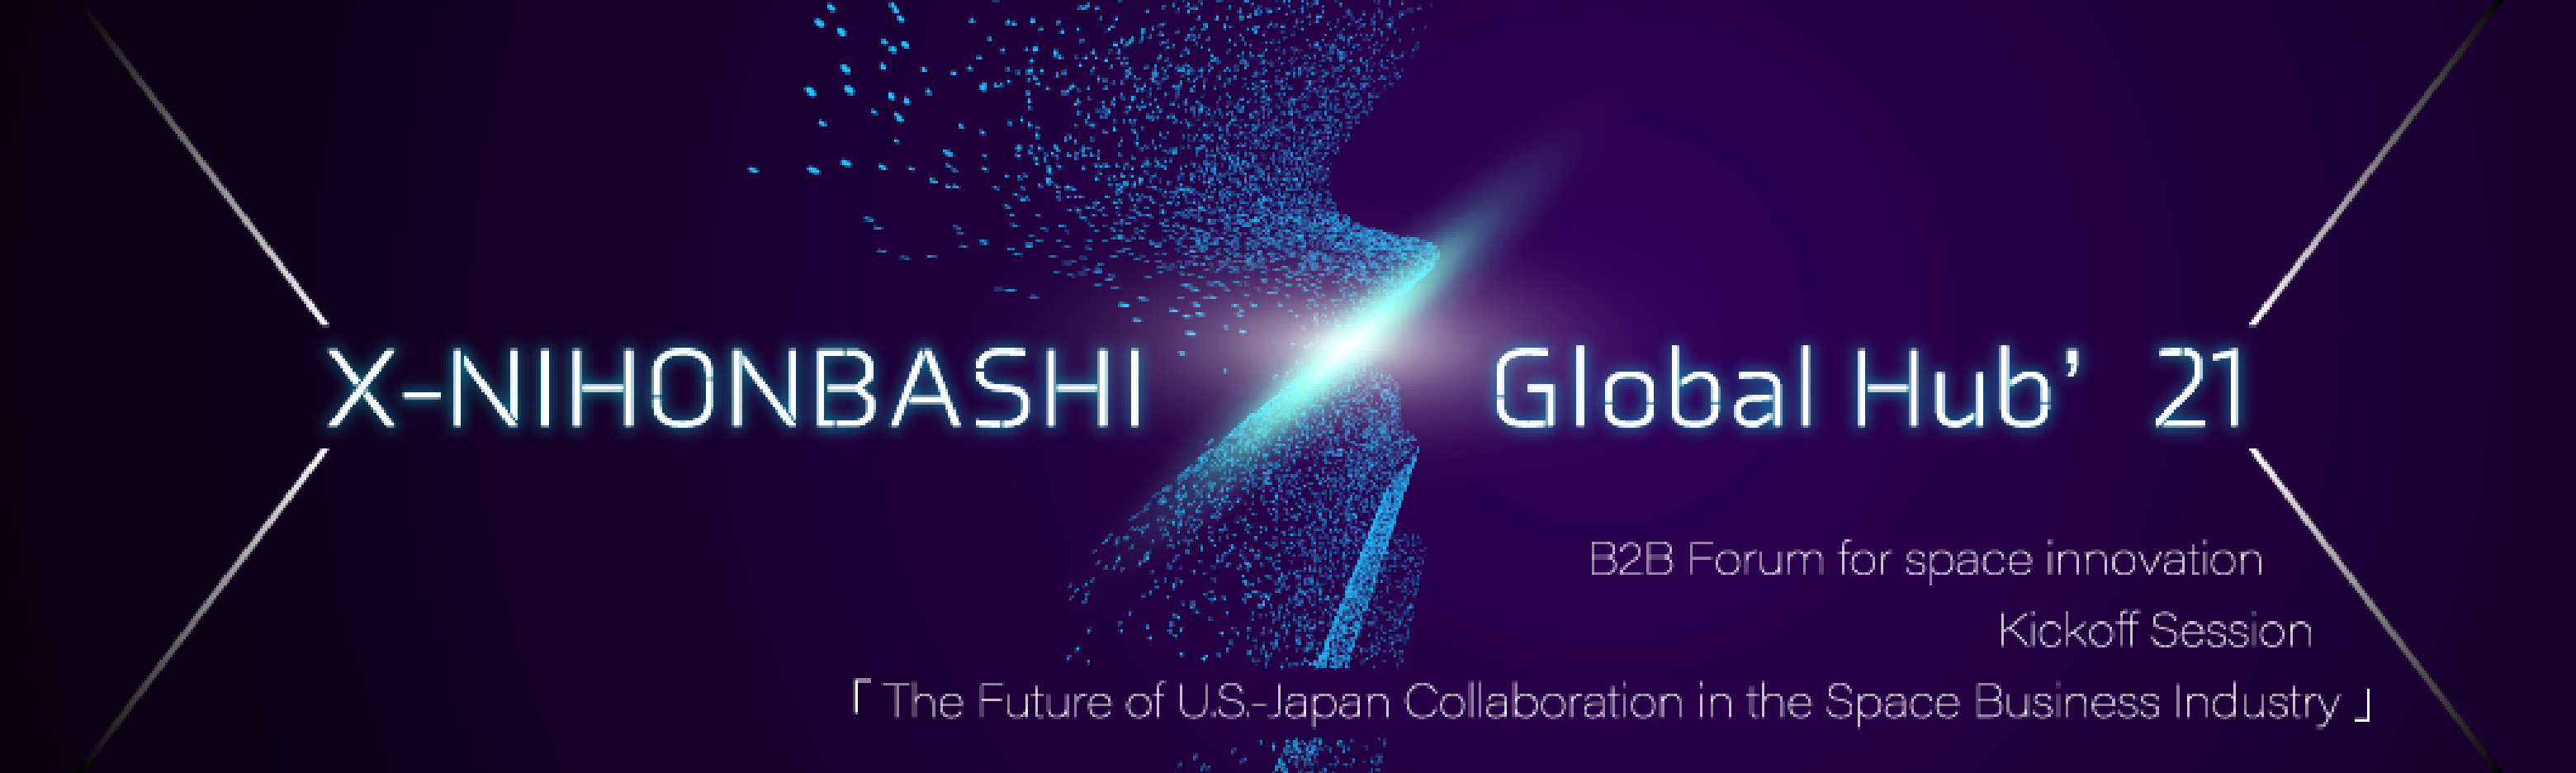 X-NIHONBASHI Global Hub'21